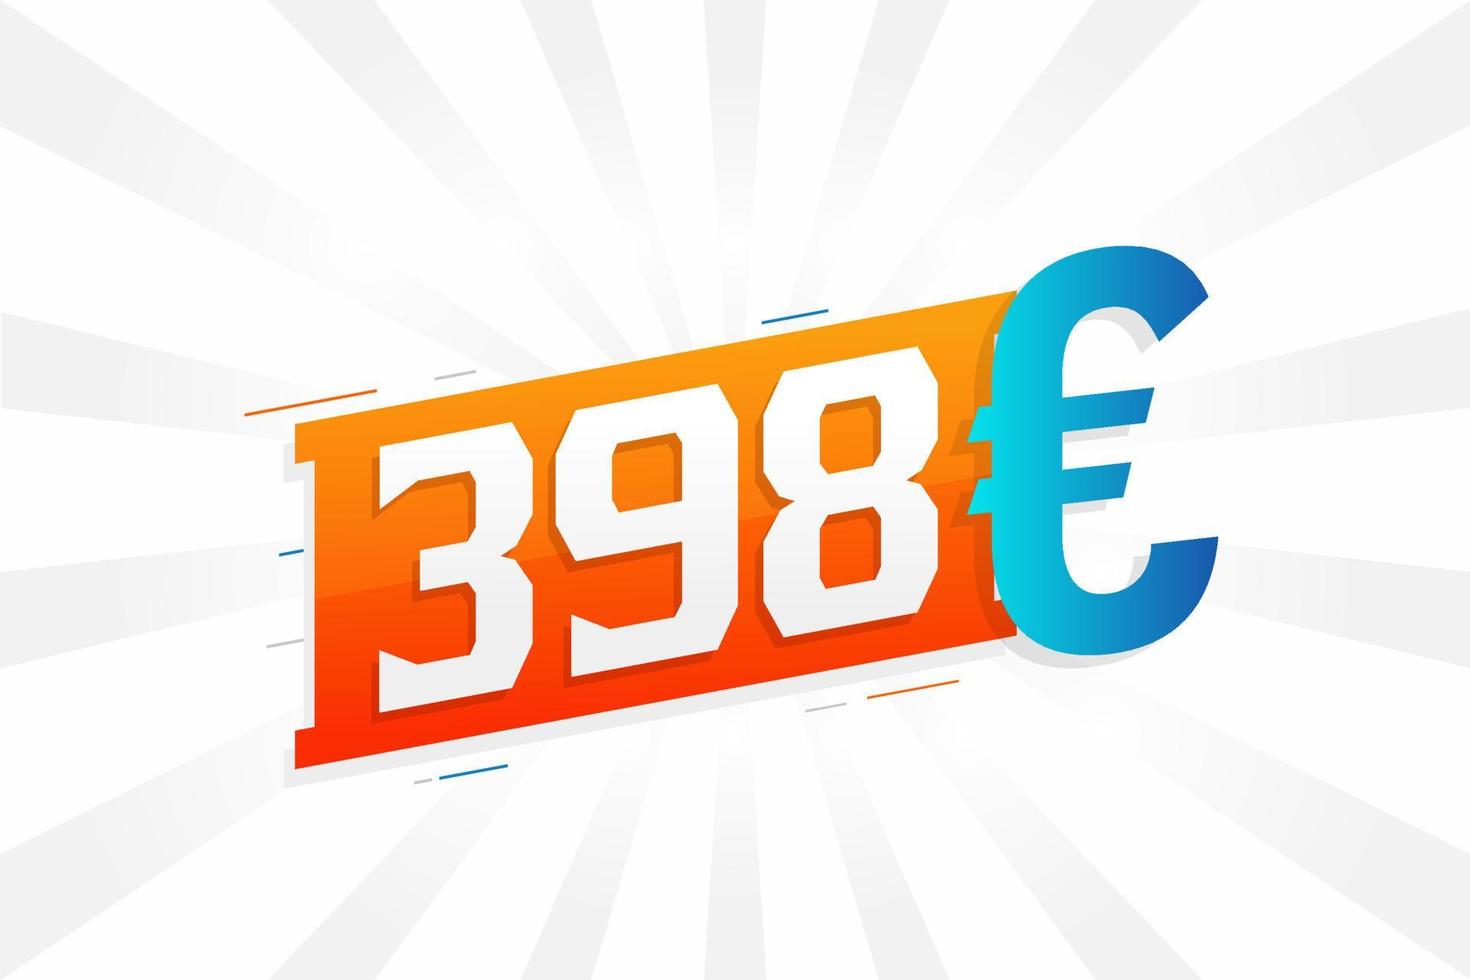 398-Euro-Währungsvektor-Textsymbol. 398 euro geldstockvektor der europäischen union vektor